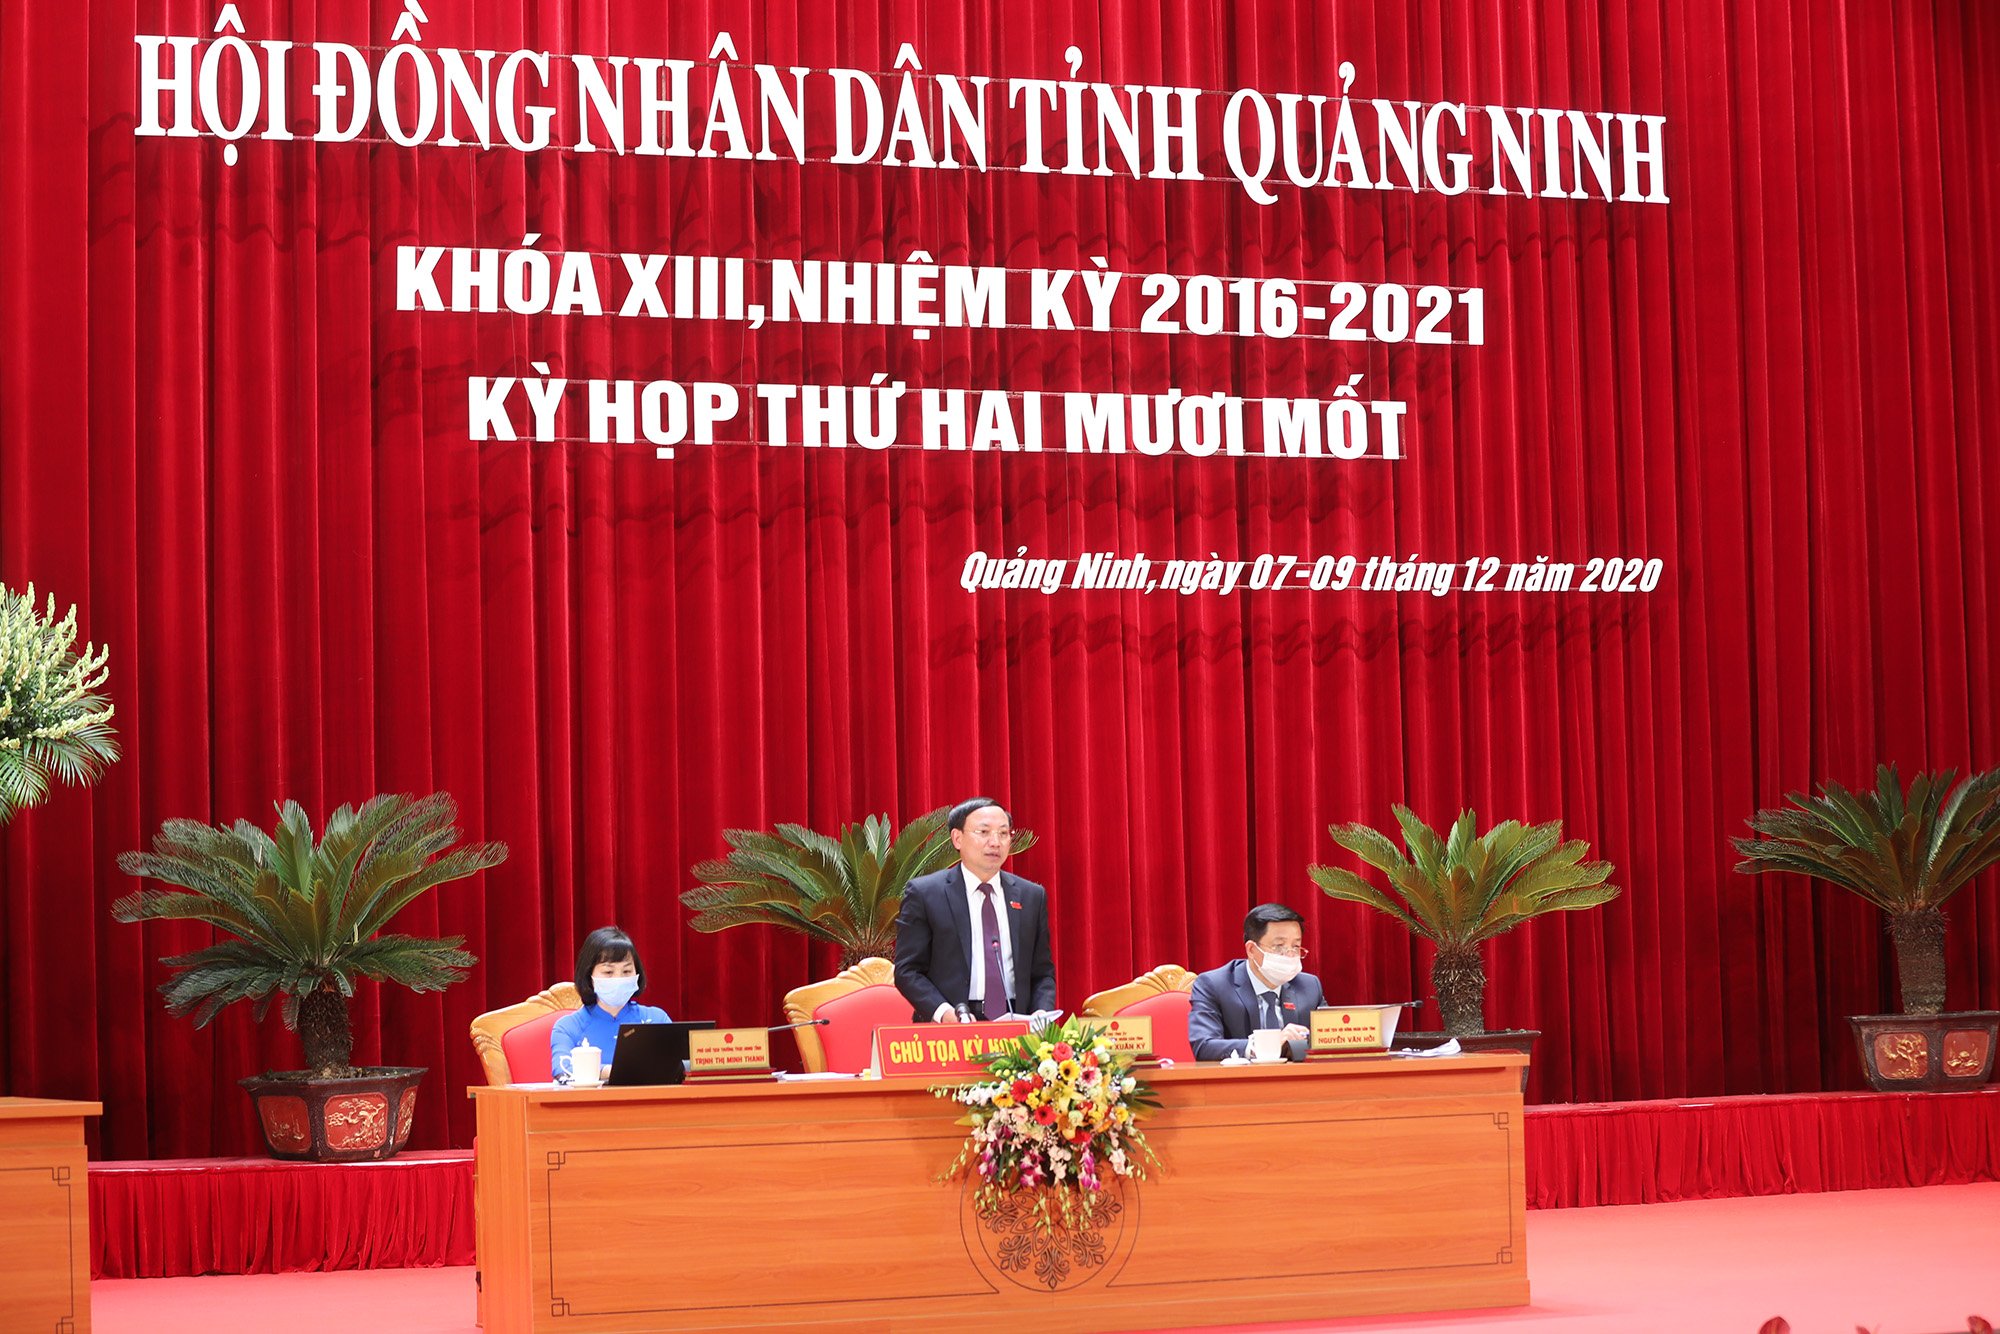 Đồng chí Nguyễn Xuân Ký, Bí thư Tỉnh ủy, Chủ tịch HĐND tỉnh, kết luận nội dung chất vấn liên quan đến tài nguyên rừng và nước.